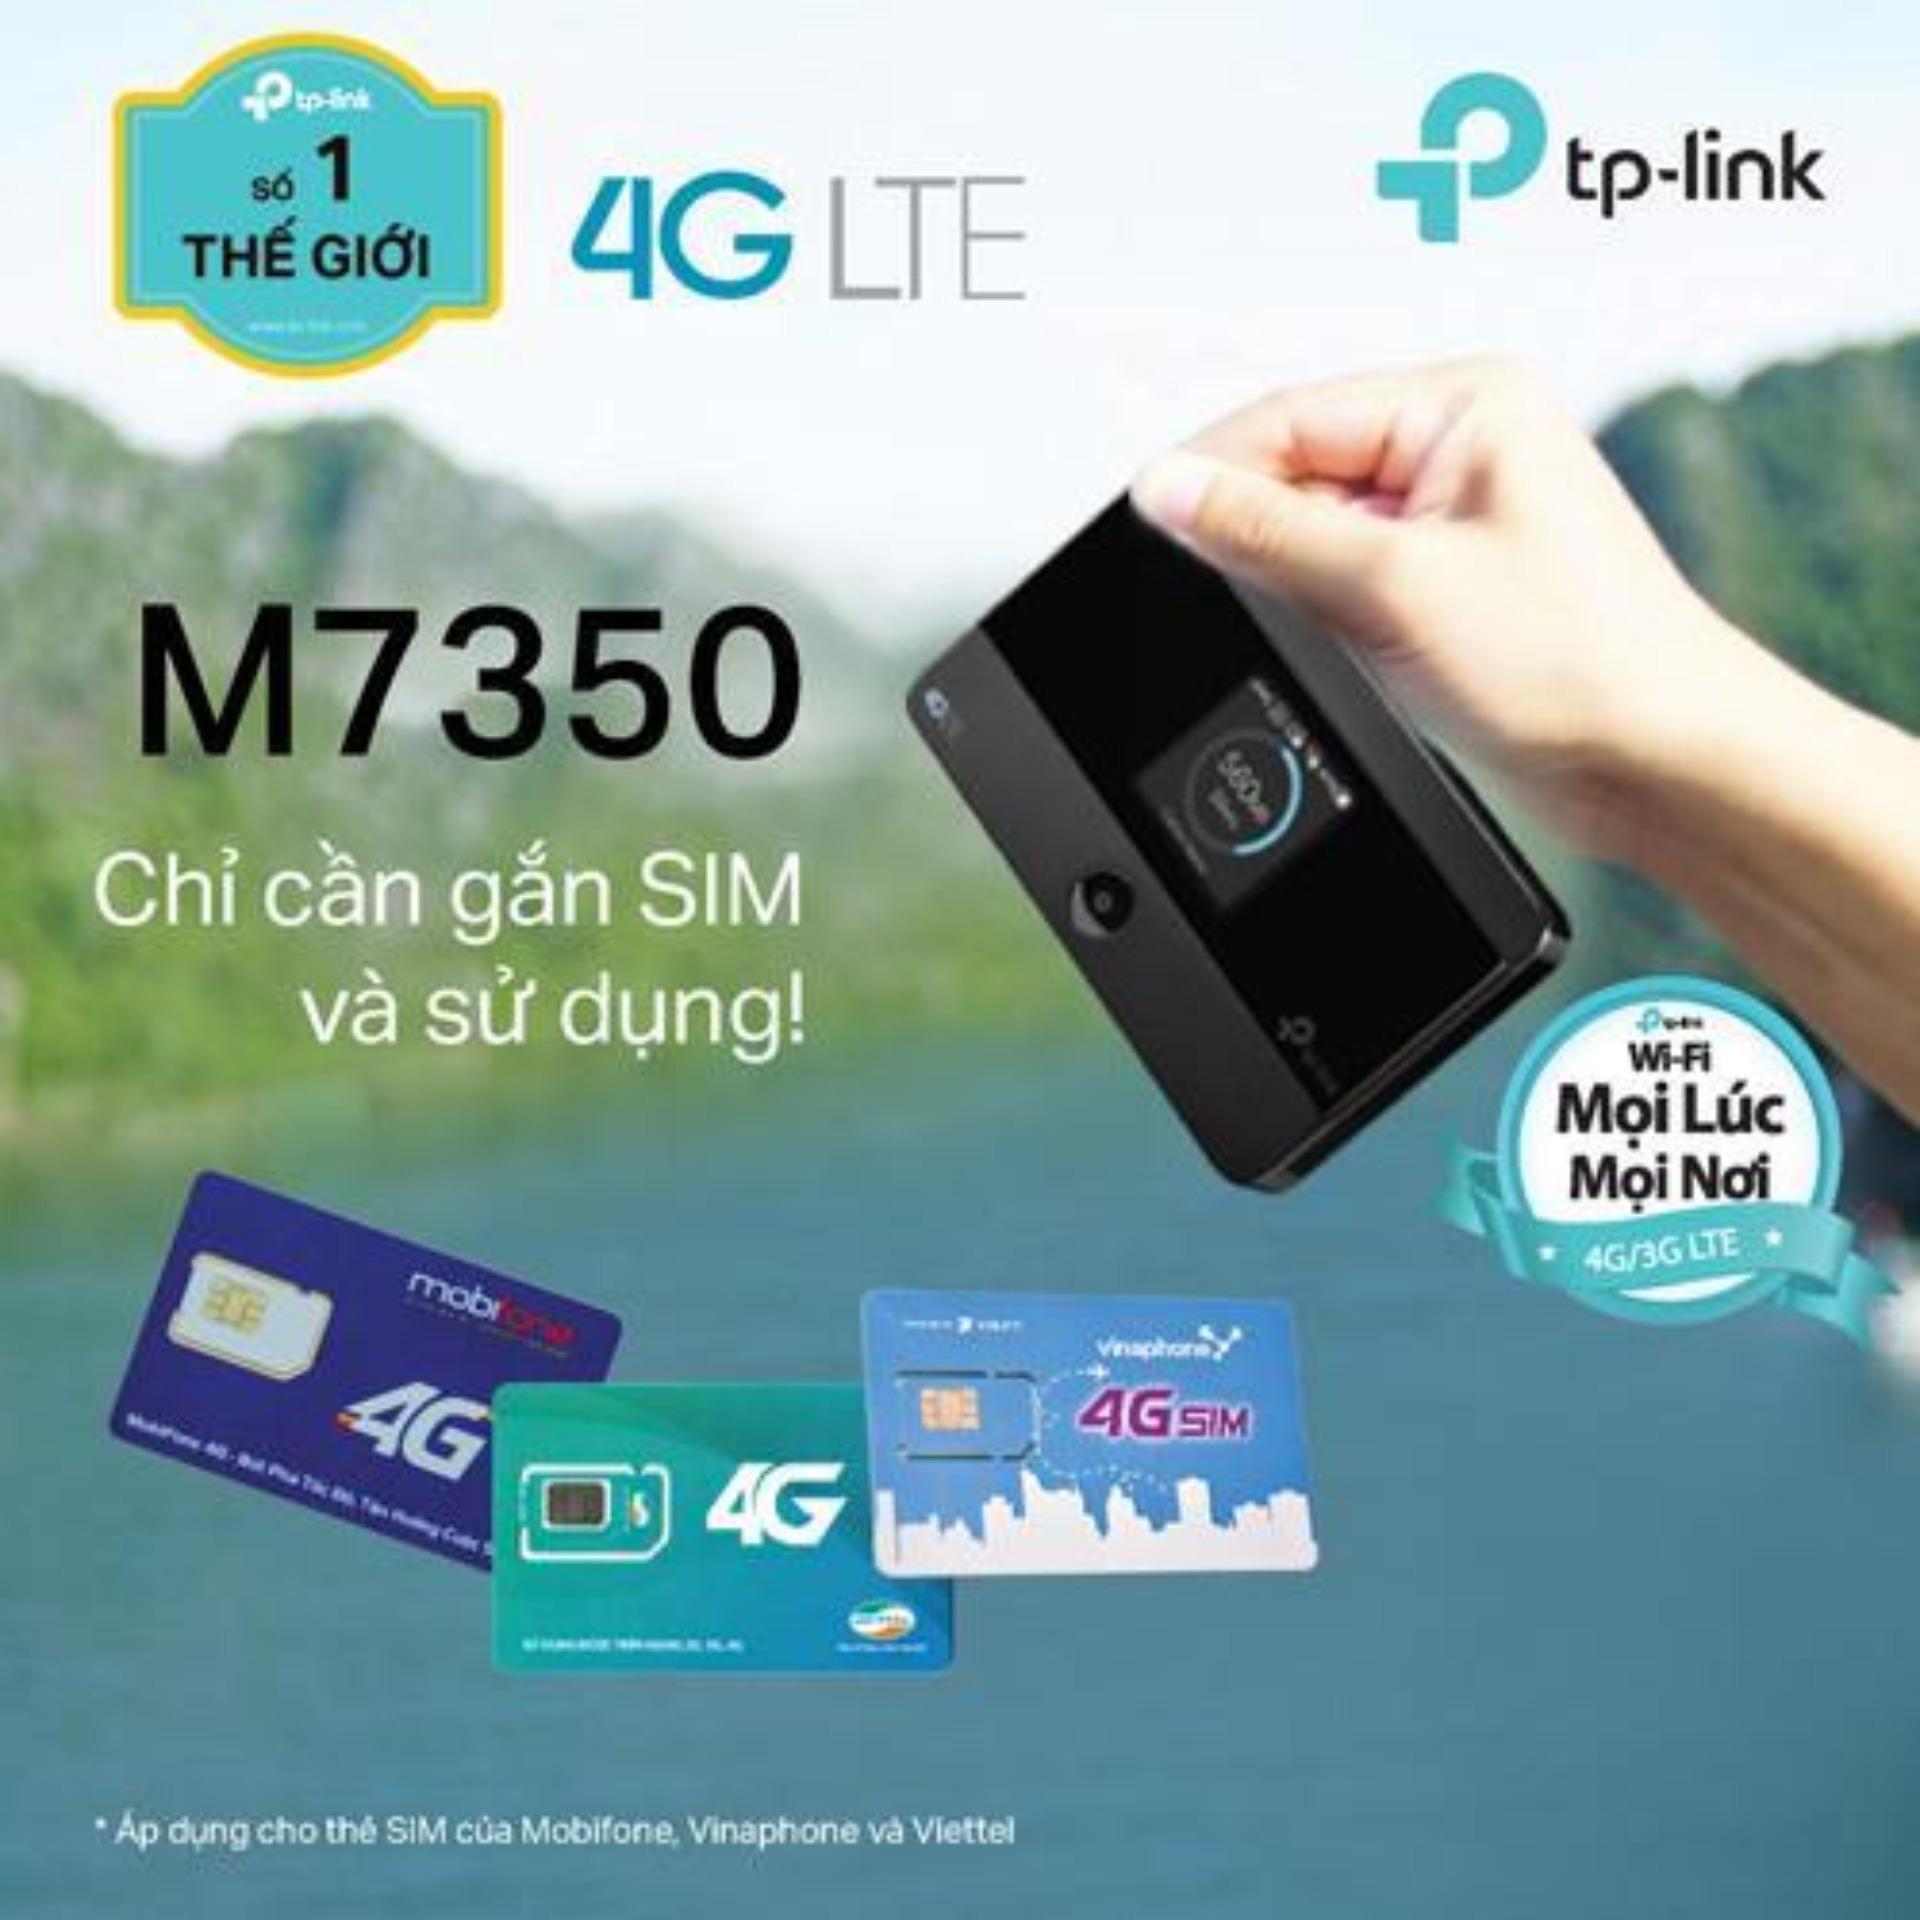 Bộ phát sóng wifi bằng 3G/4G TP-Link M7350